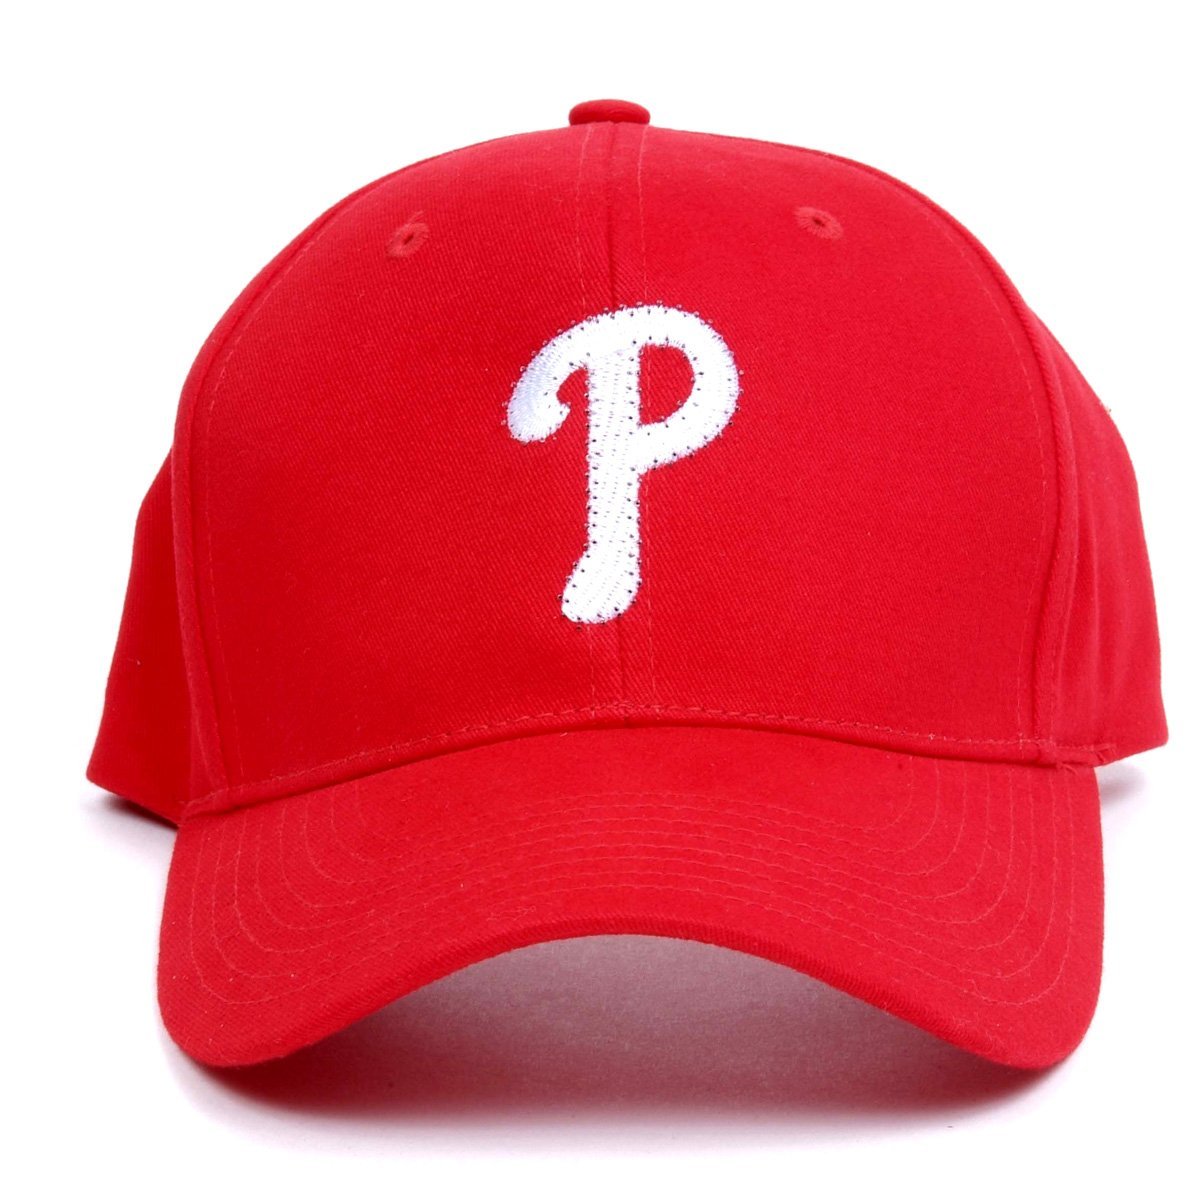 MLB - Novelty Headwear / Caps & Hats: Sports & Outdoors